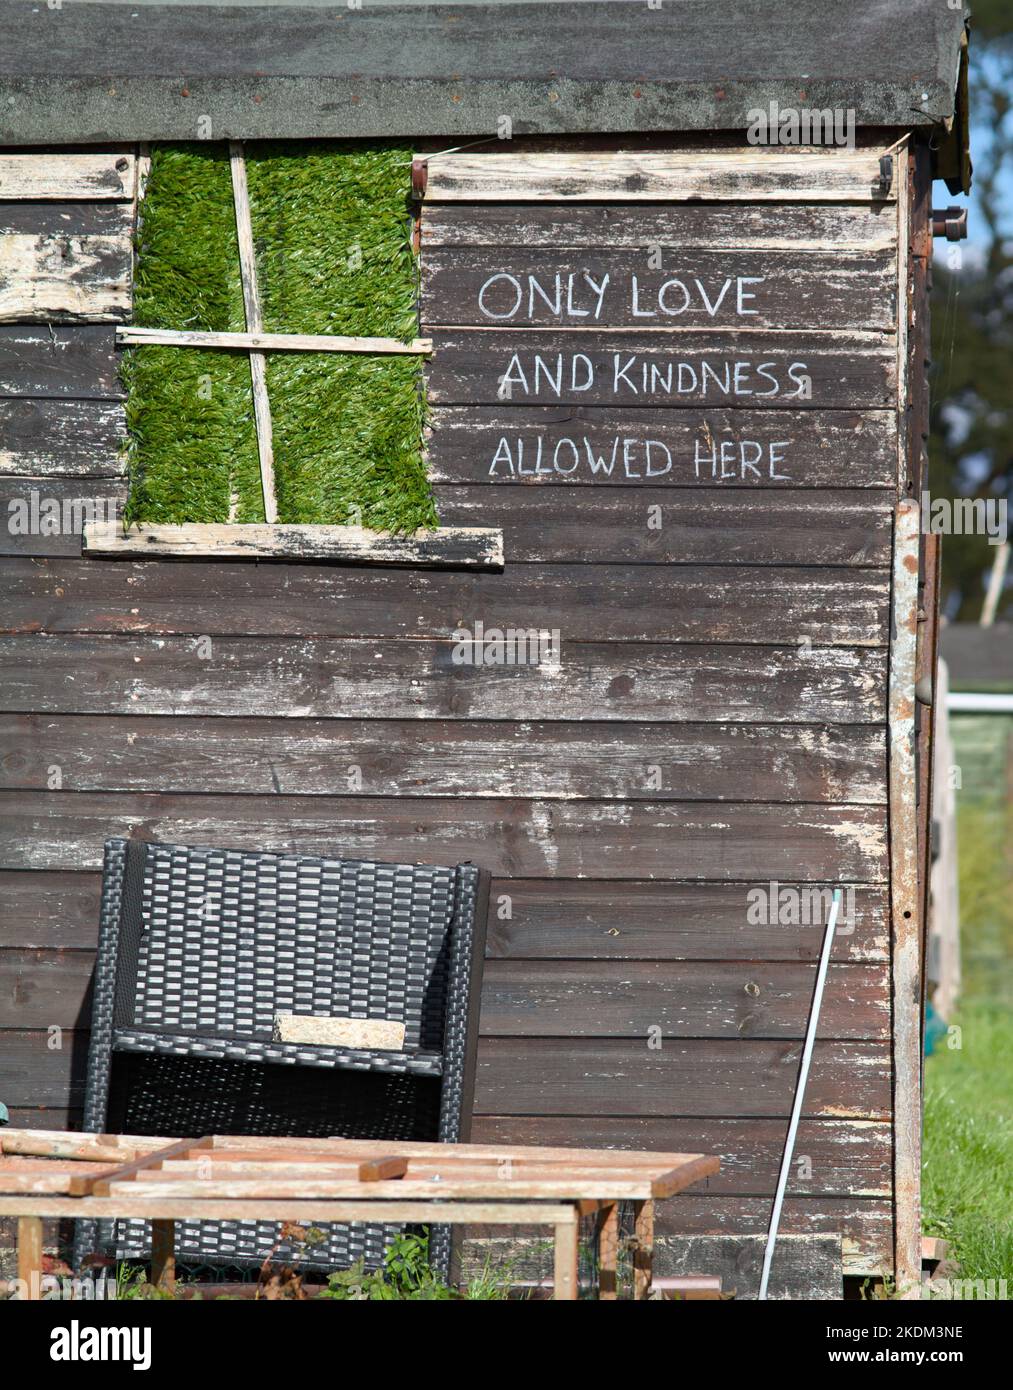 Alte Holzschuppen in einer Zuteilung mit der positiven motivierenden Botschaft 'nur Liebe und Freundlichkeit hier erlaubt', gemalt auf der Seite, England Großbritannien Stockfoto